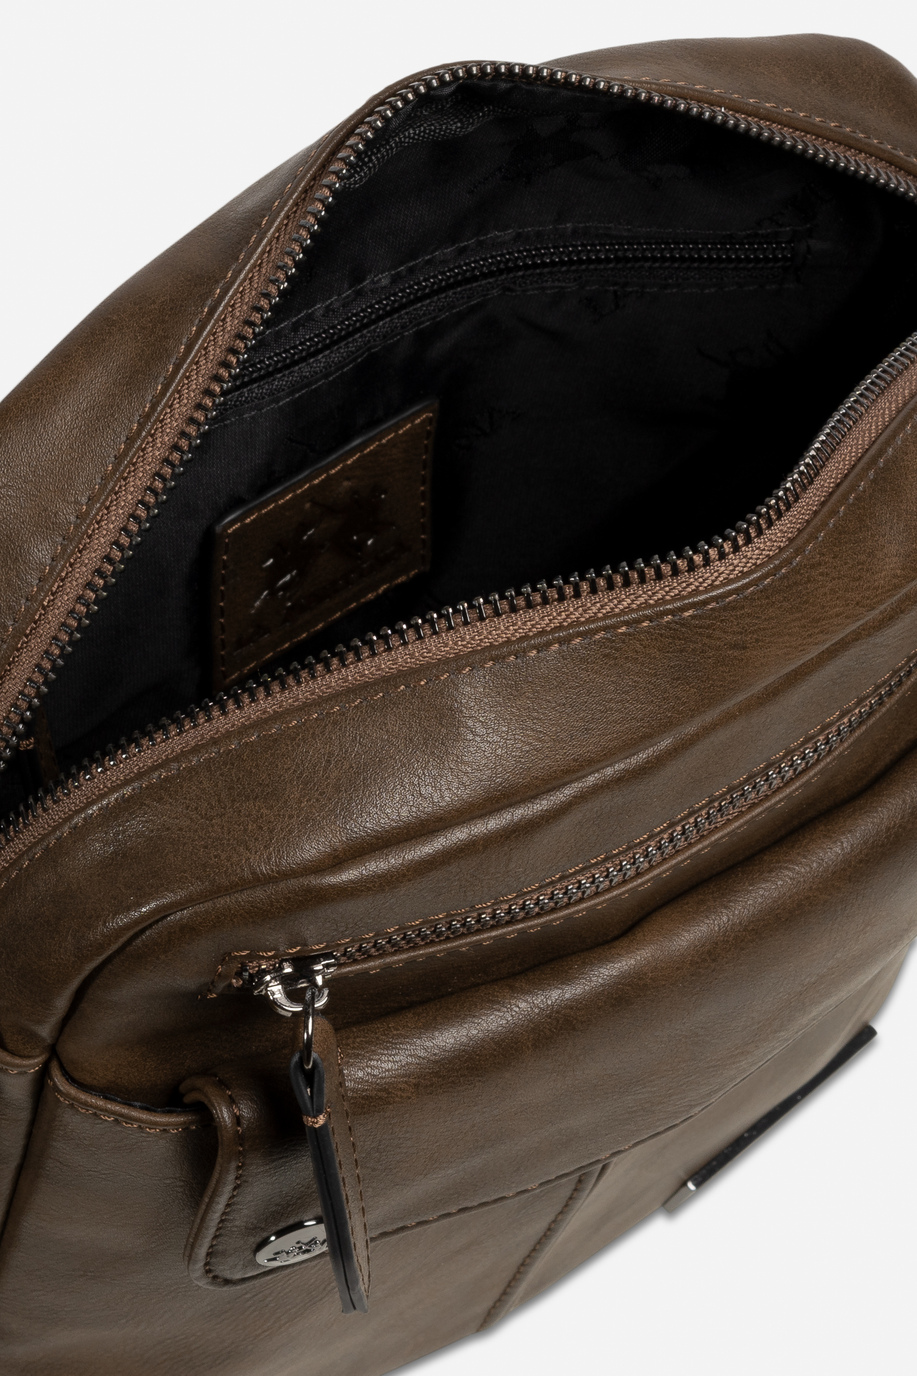 Bodybag Uomo In Pu - Accessori | La Martina - Official Online Shop